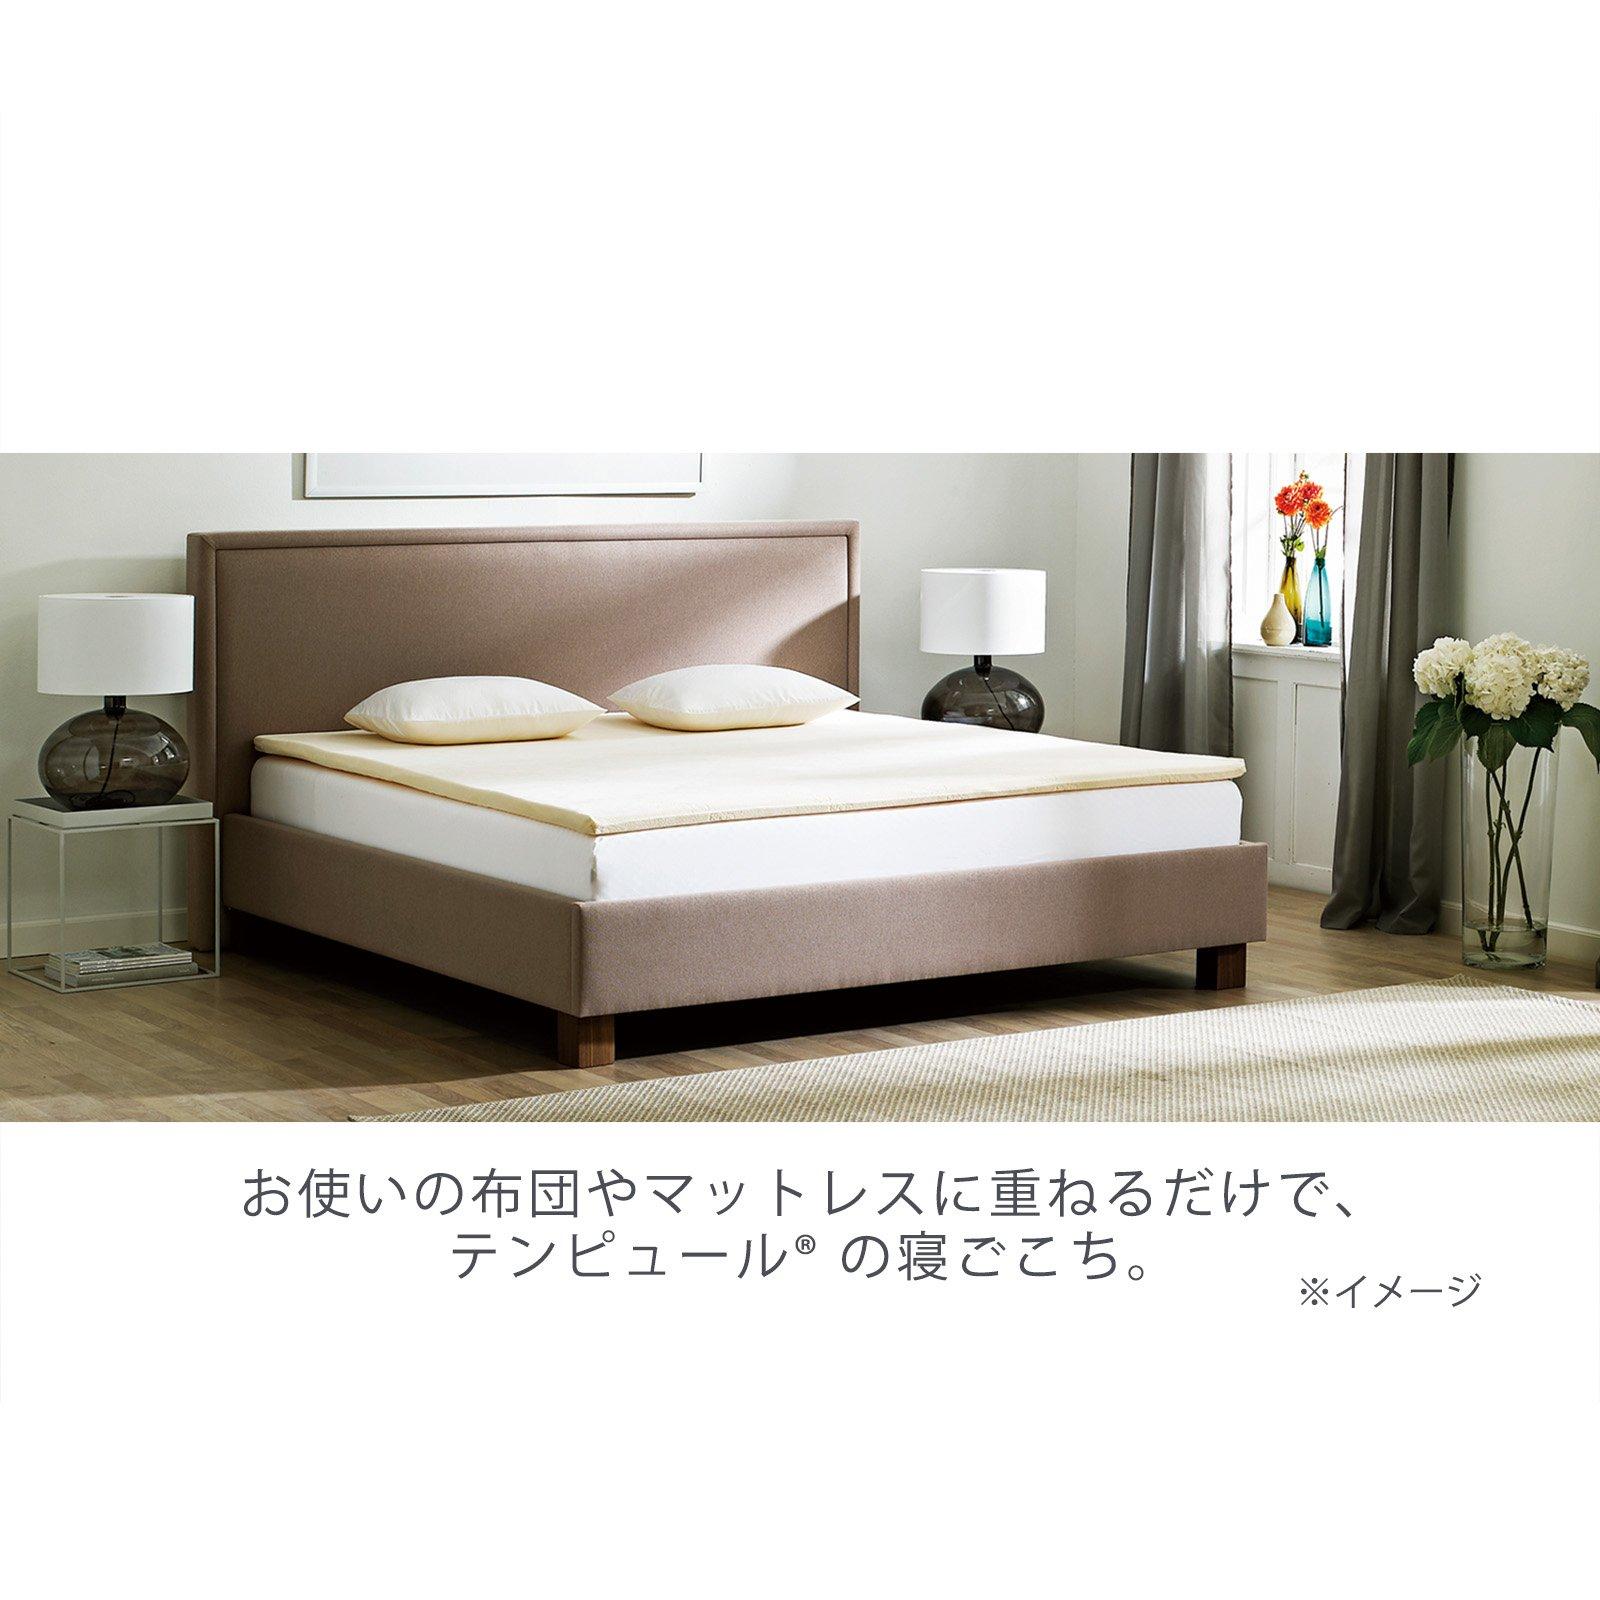 美品 テンピュール トッパー7 シングルサイズ 低反発マットレス - 寝具